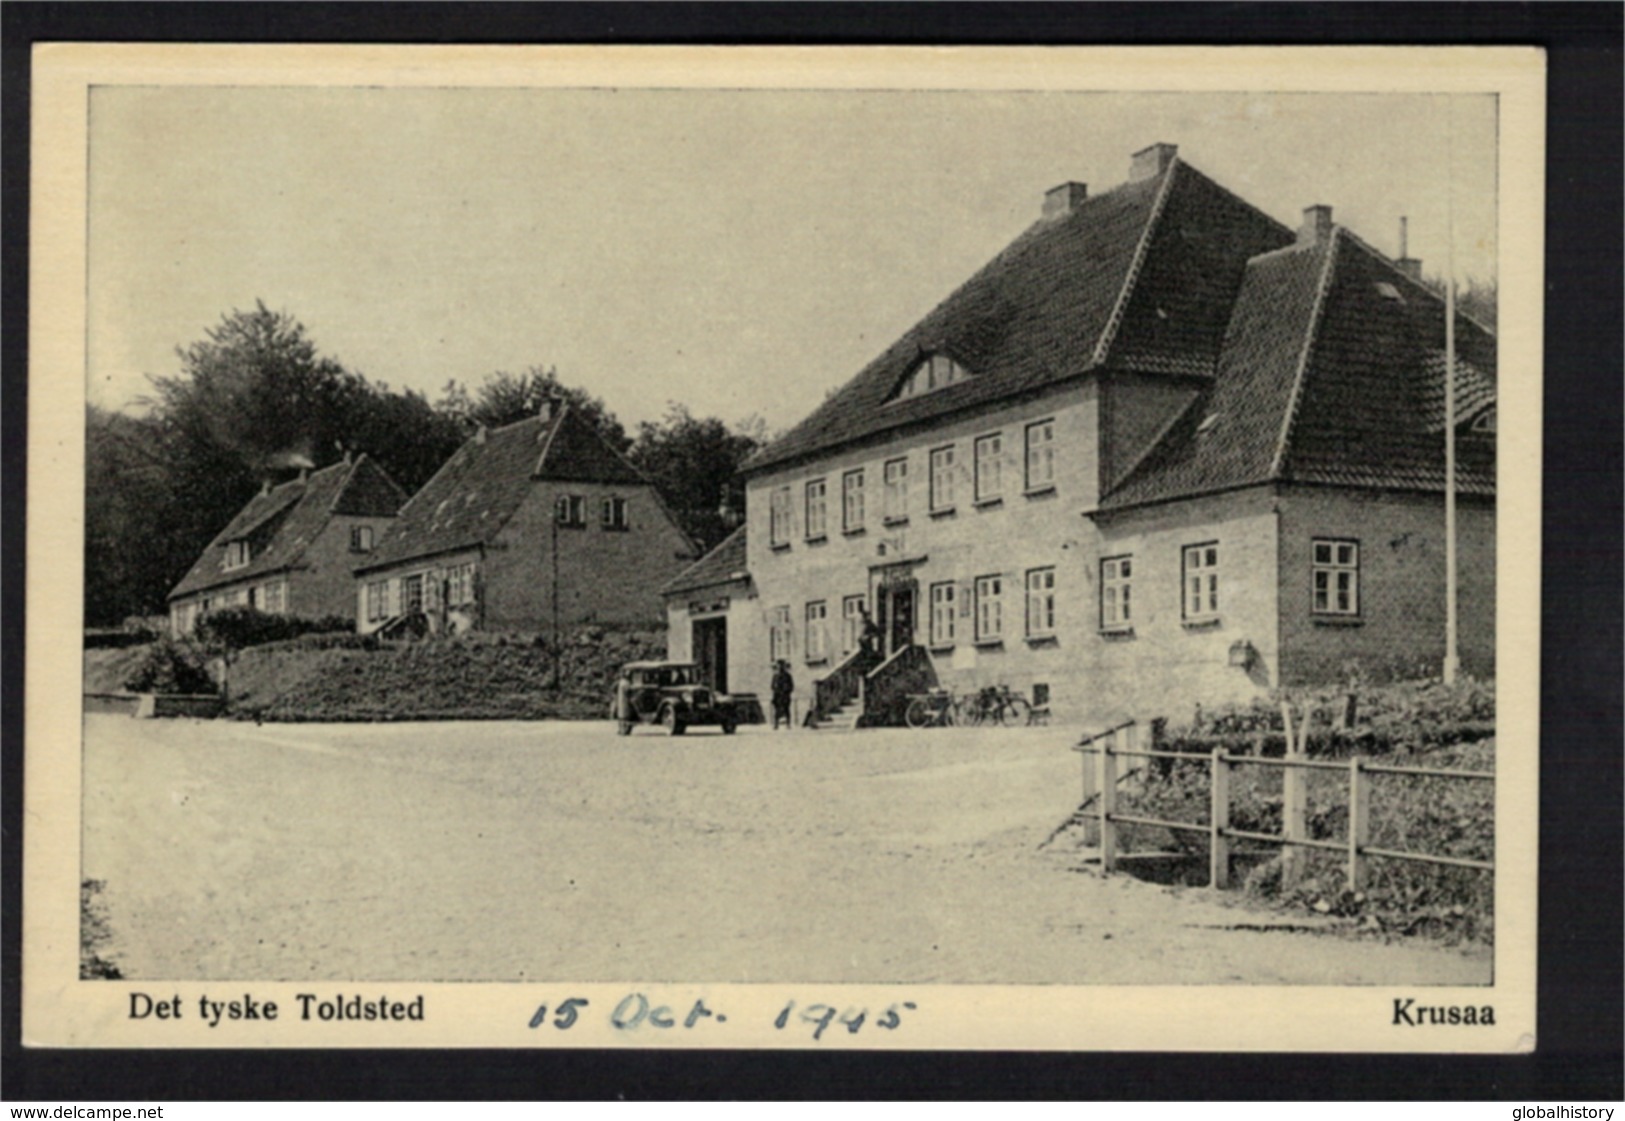 DG1022 - DENMARK - DET TYSKE TOLDSTED, OKTOBER 1945 - Denemarken